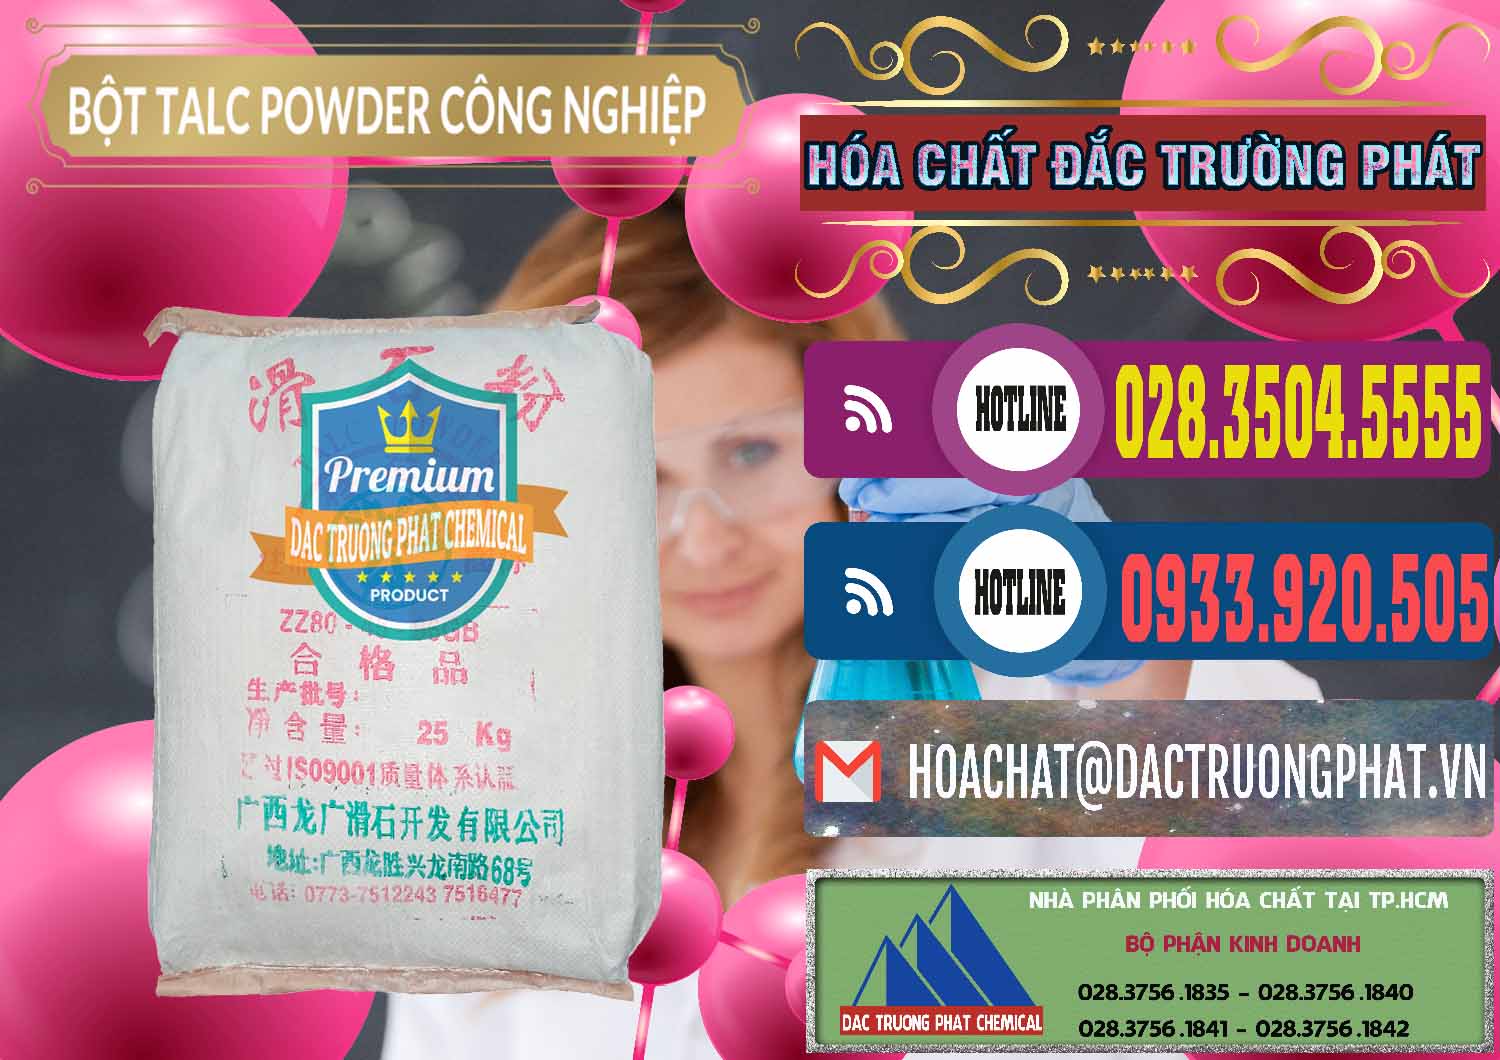 Nơi cung ứng & bán Bột Talc Powder Công Nghiệp Trung Quốc China - 0037 - Cty cung cấp & kinh doanh hóa chất tại TP.HCM - muabanhoachat.com.vn